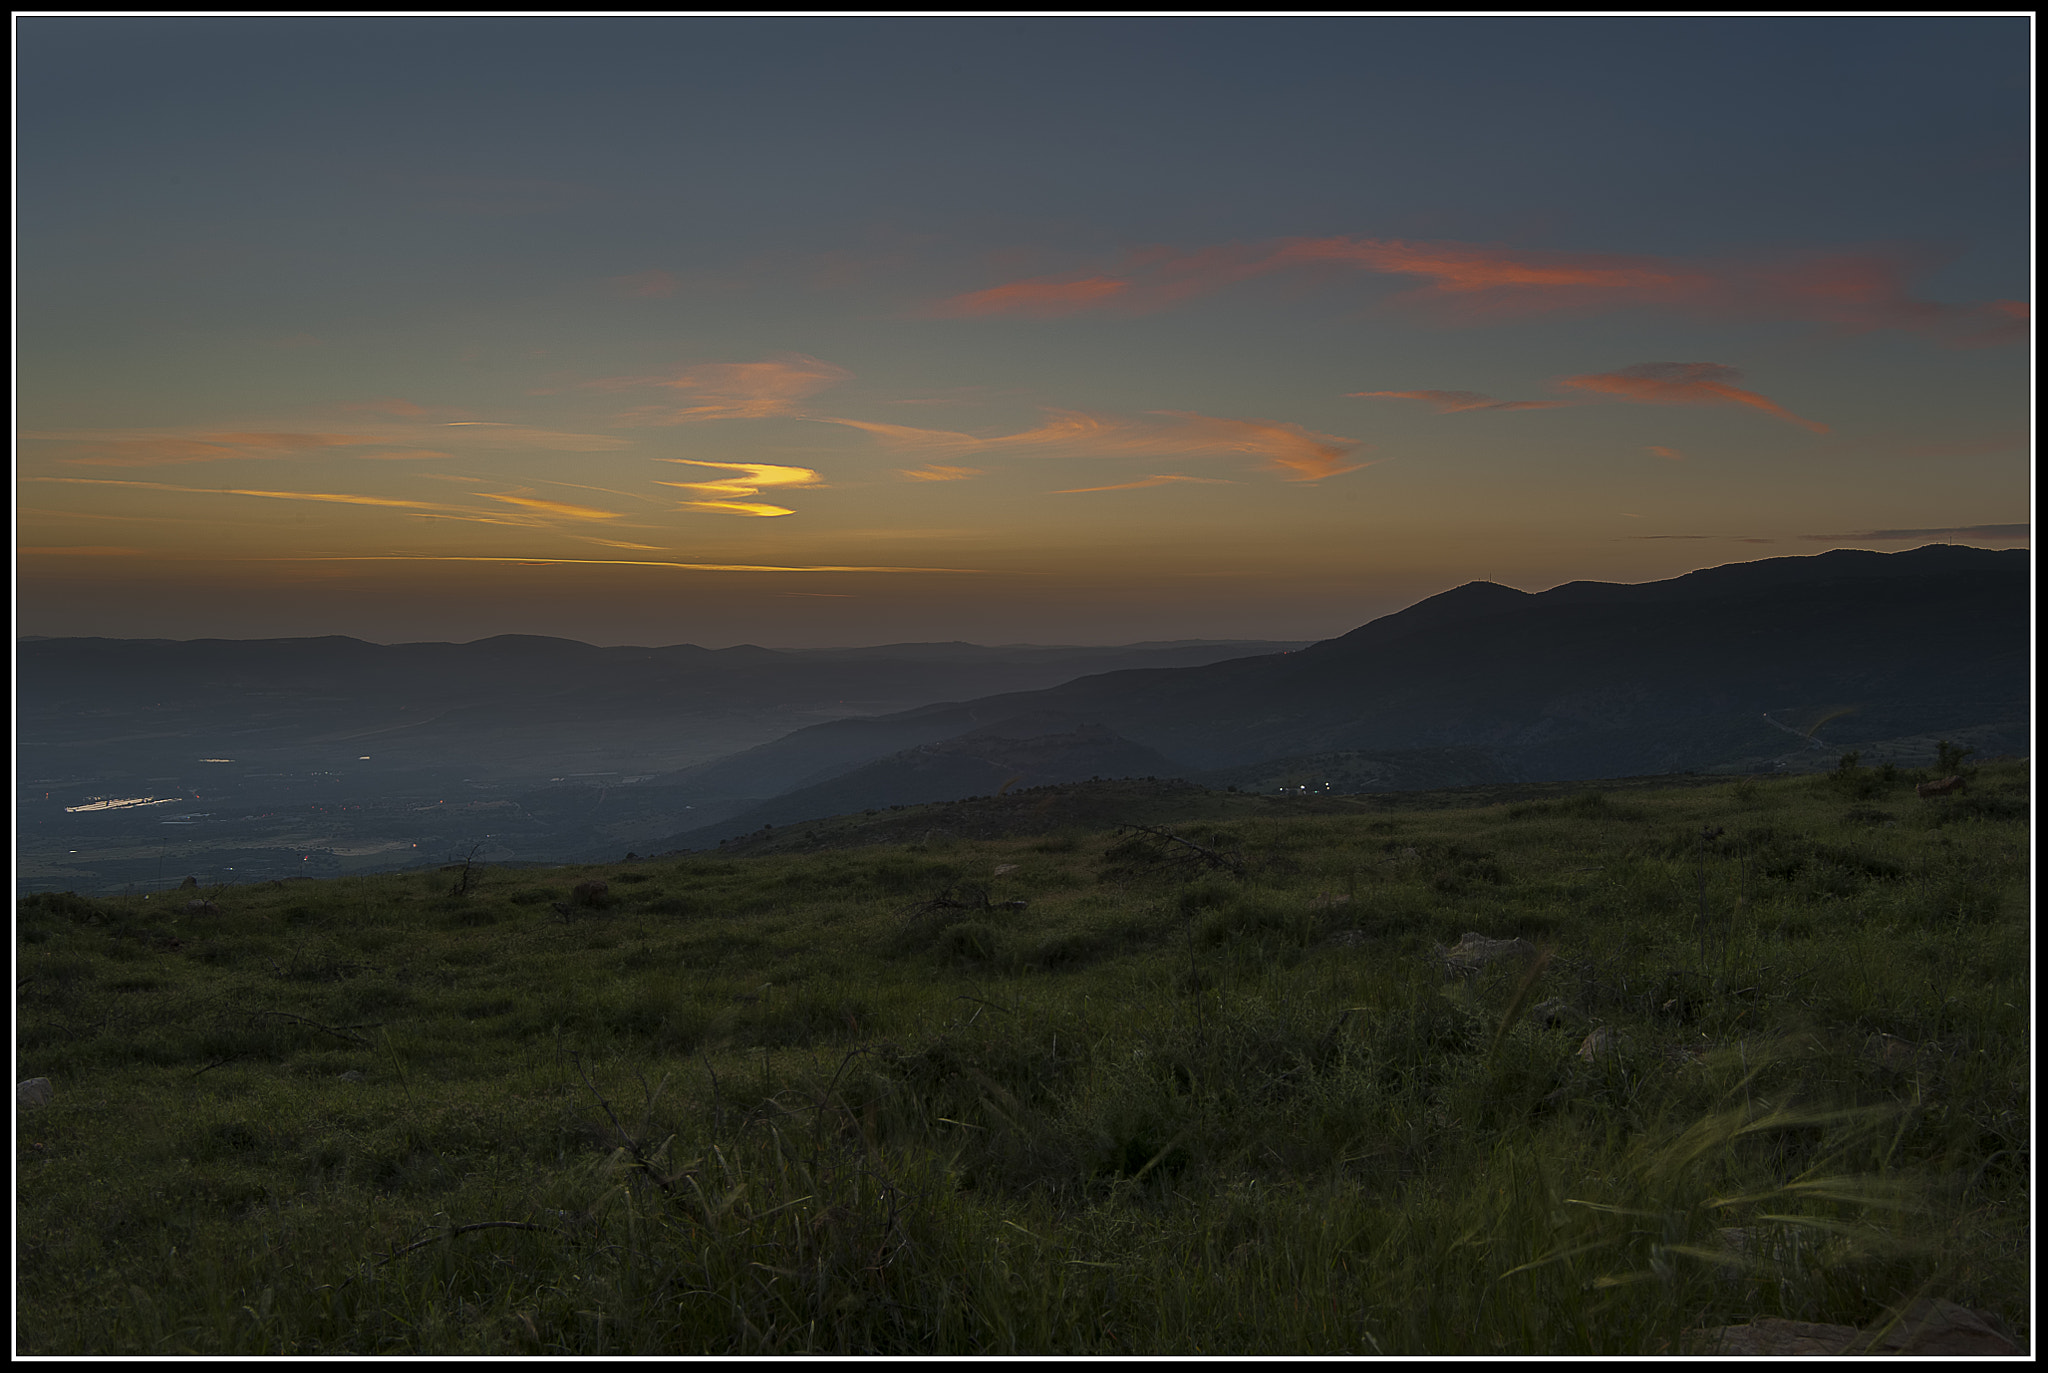 Nikon D700 + Tamron SP AF 17-35mm F2.8-4 Di LD Aspherical (IF) sample photo. Sunset photography